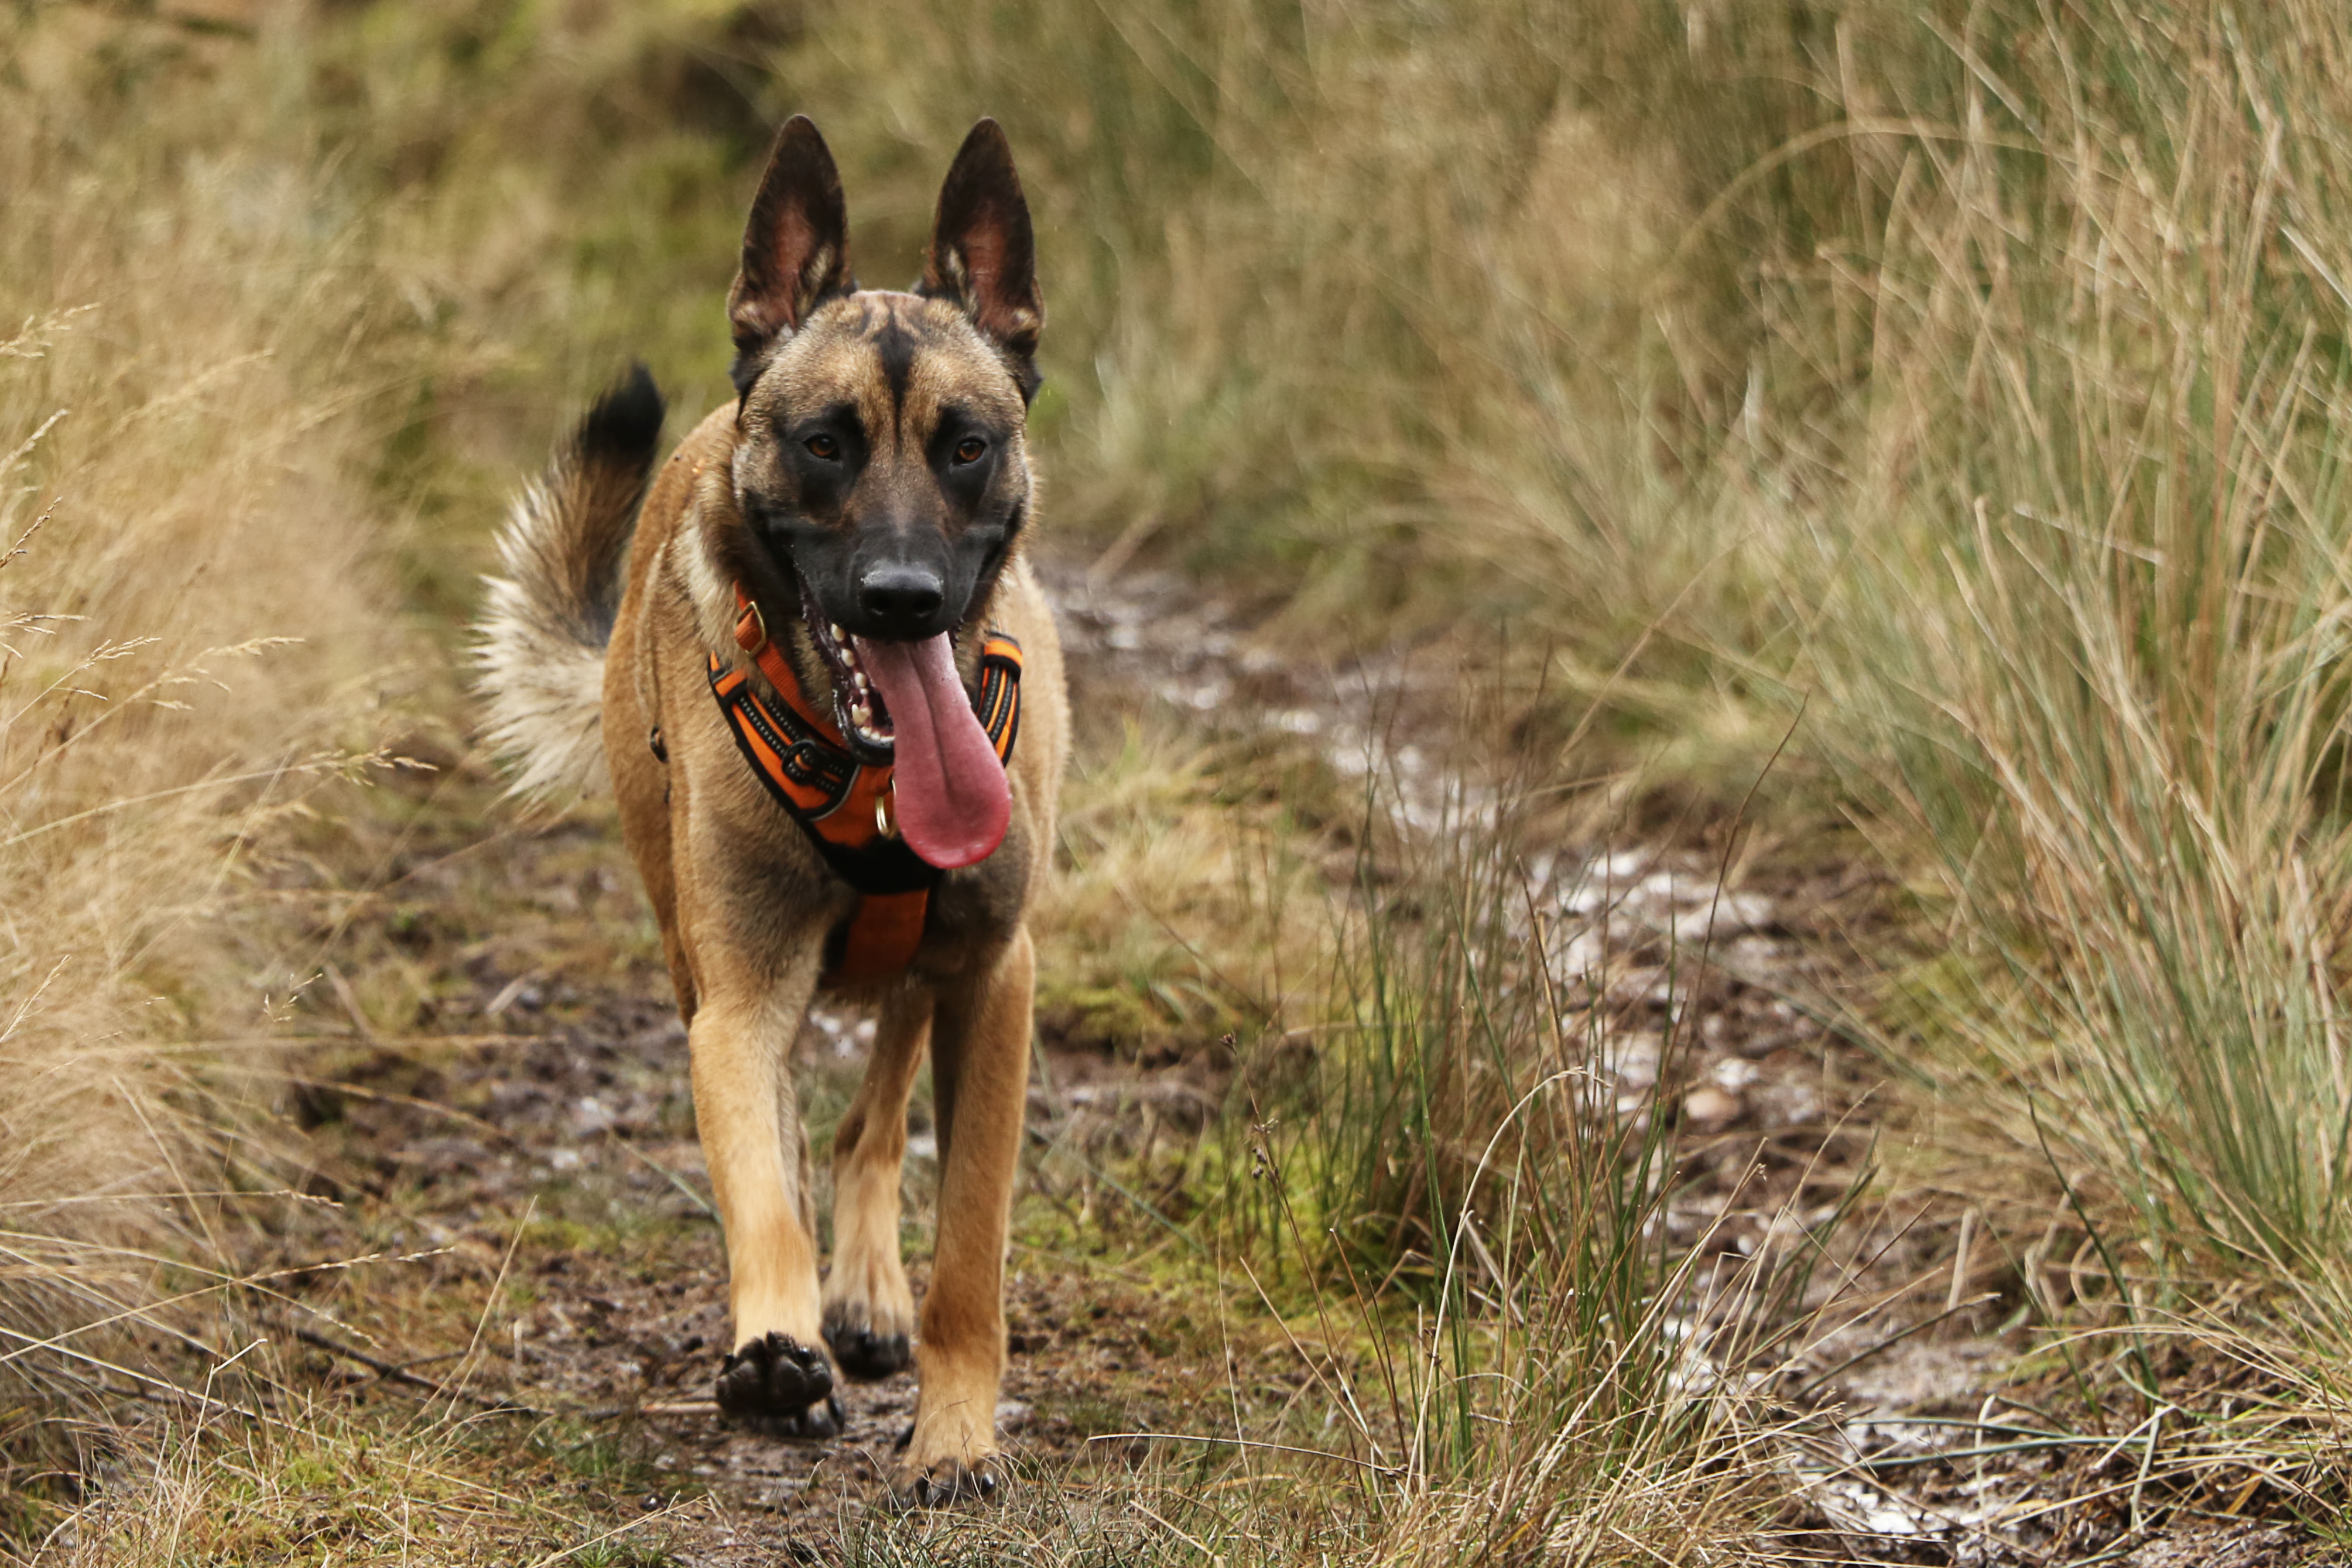 Dog Trainer Agata Brzek's dog Arco enjoys off-leash freedom